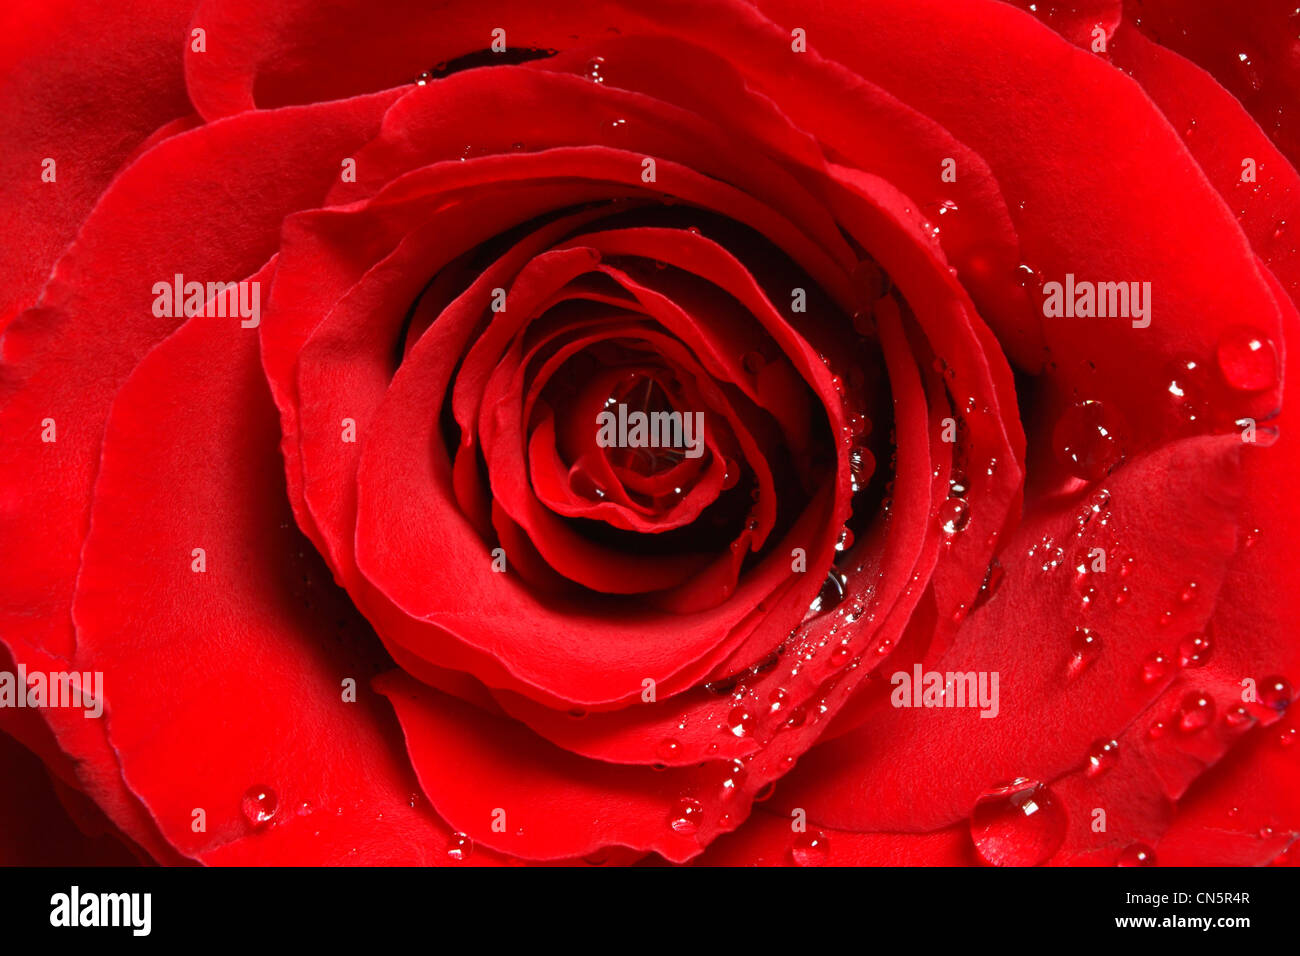 Un primo piano di una rosa rossa in luce diffusa con gocce di acqua nell'angolo sud-ovest. Foto Stock